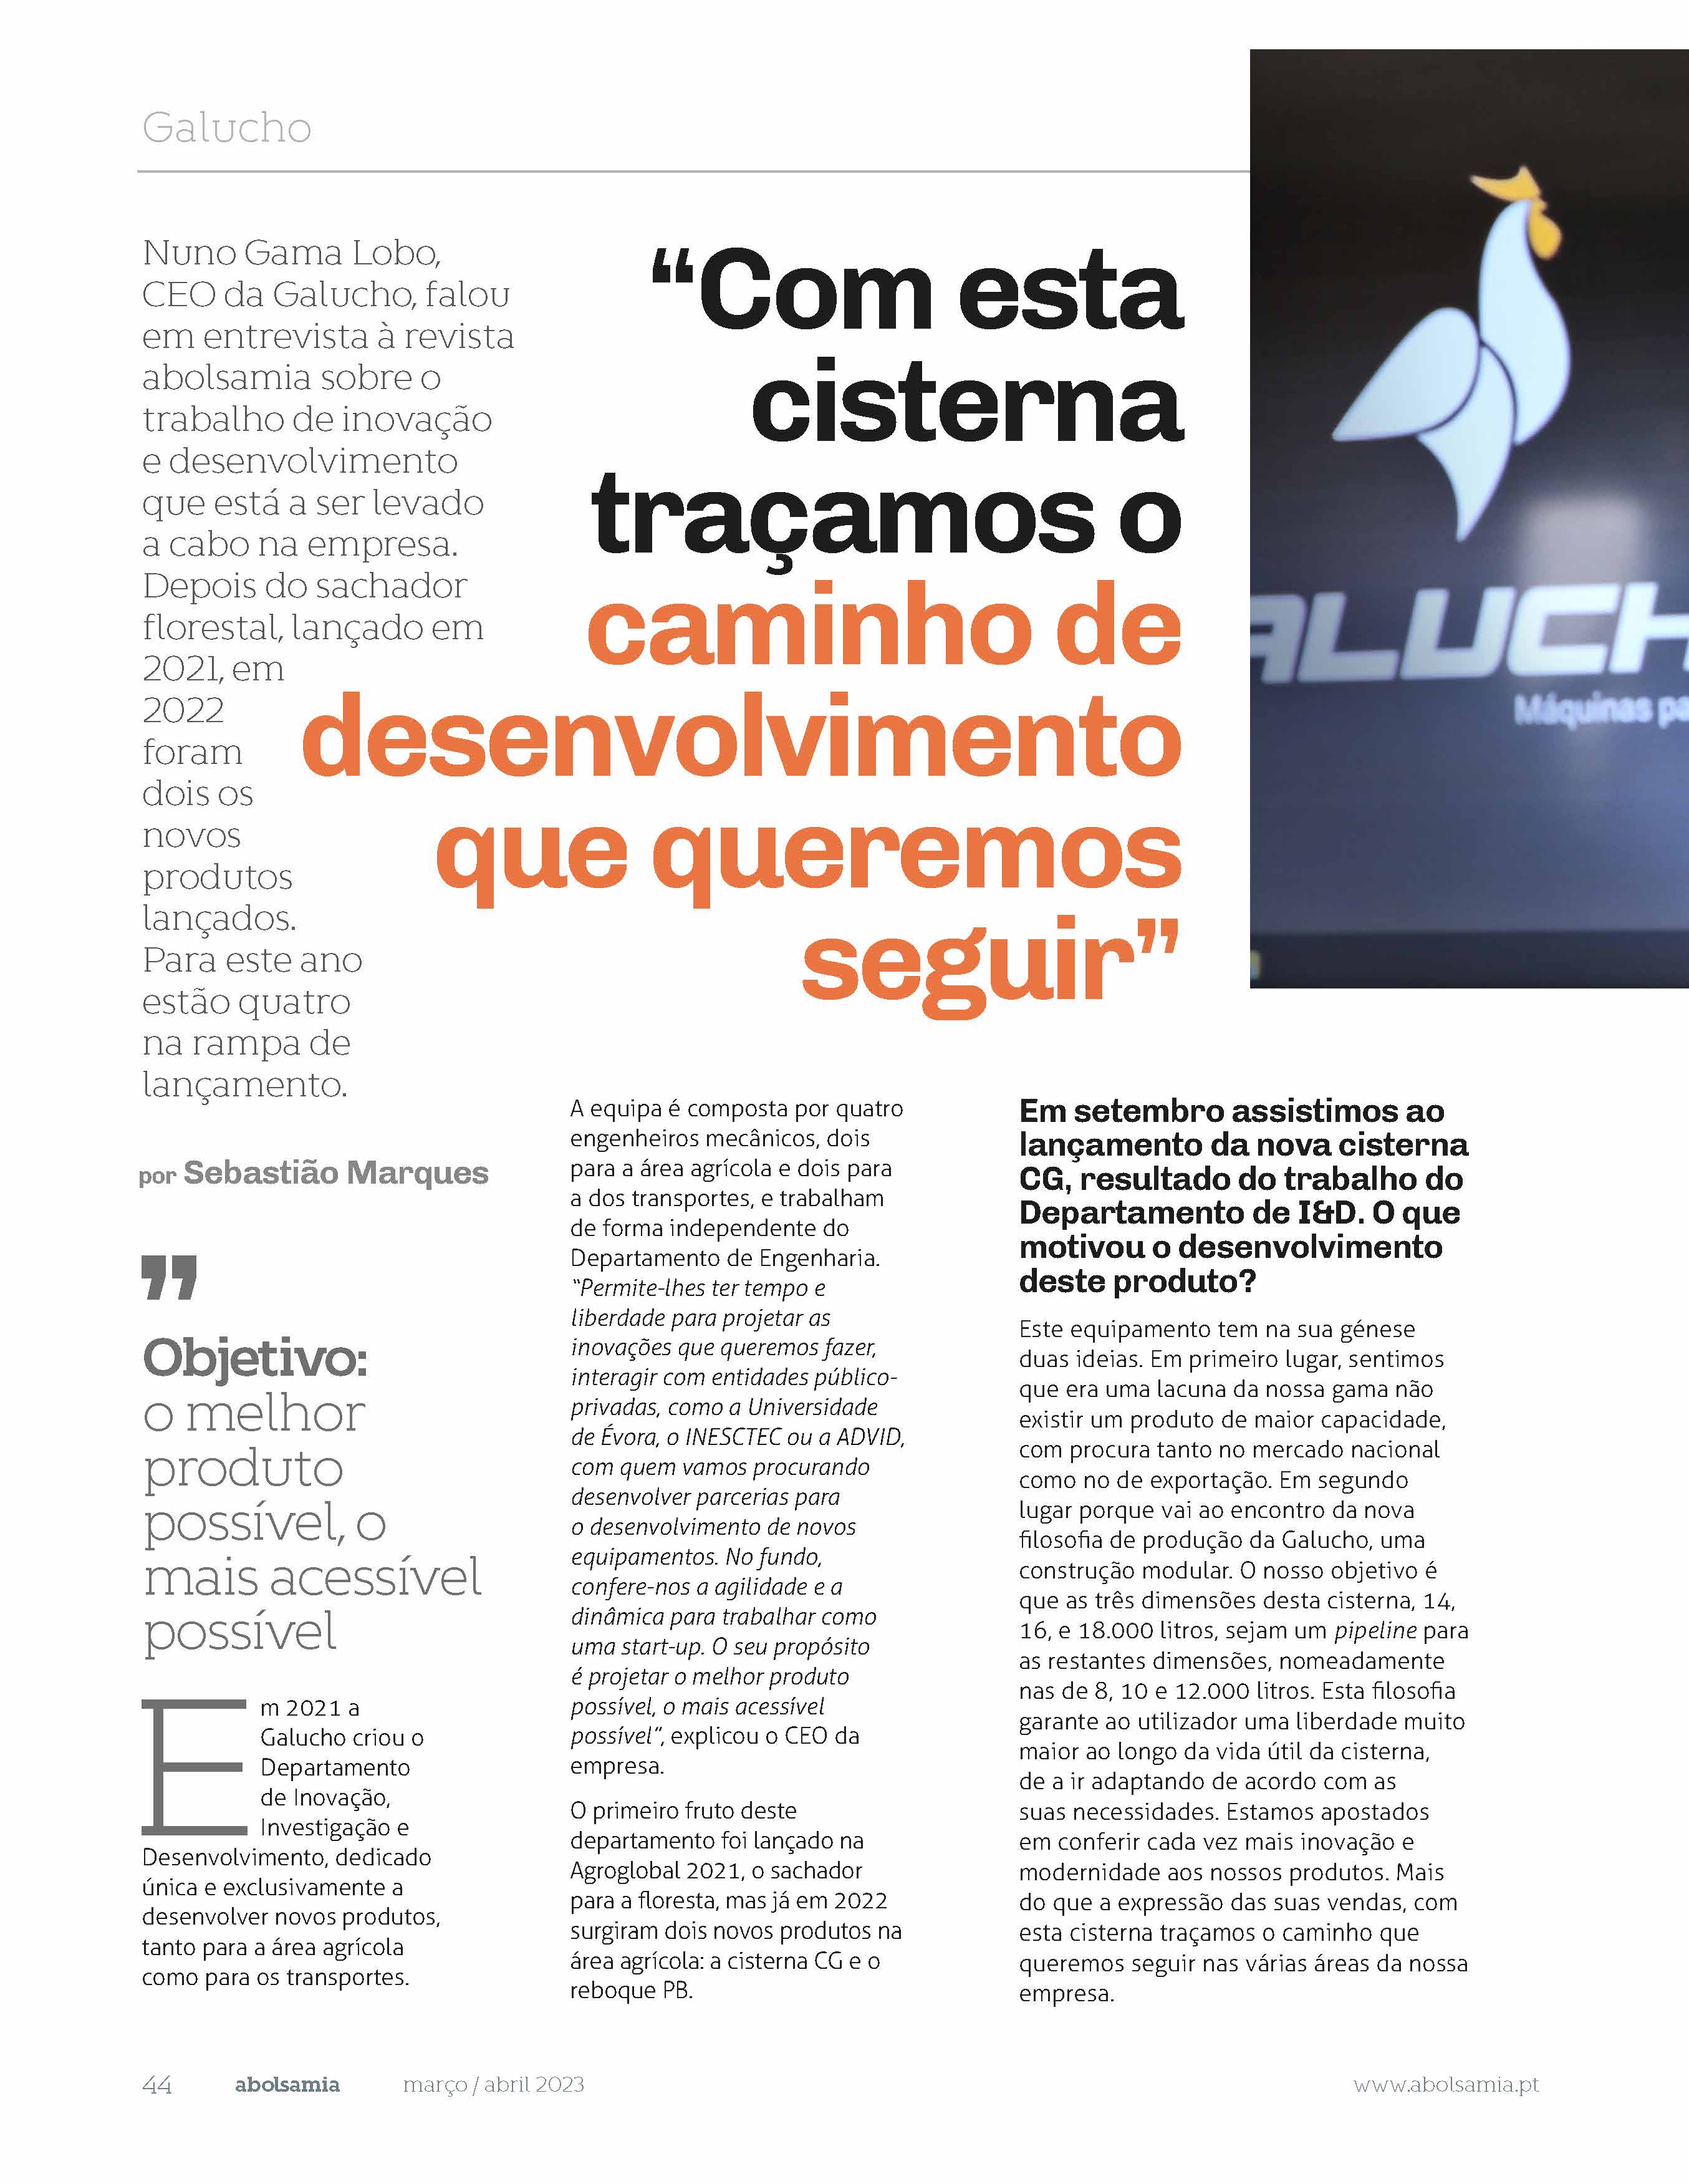 Galucho marca presença na edição 135 da revista Abolsamia